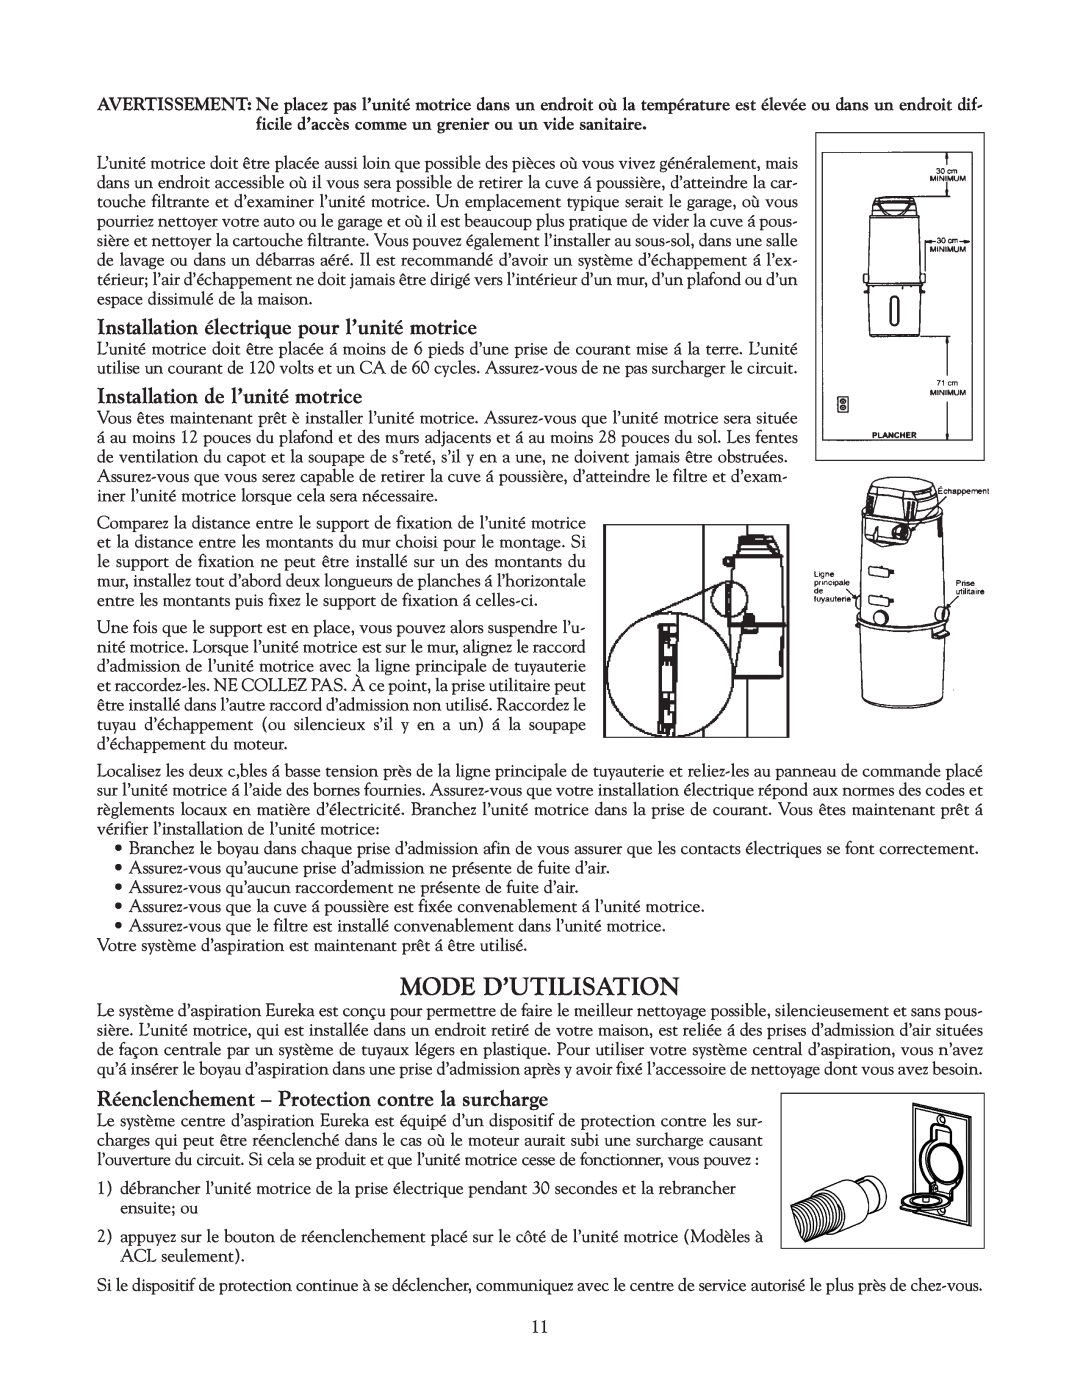 Eureka Vacuum System Cleaner owner manual Mode D’Utilisation, Installation électrique pour l’unité motrice 